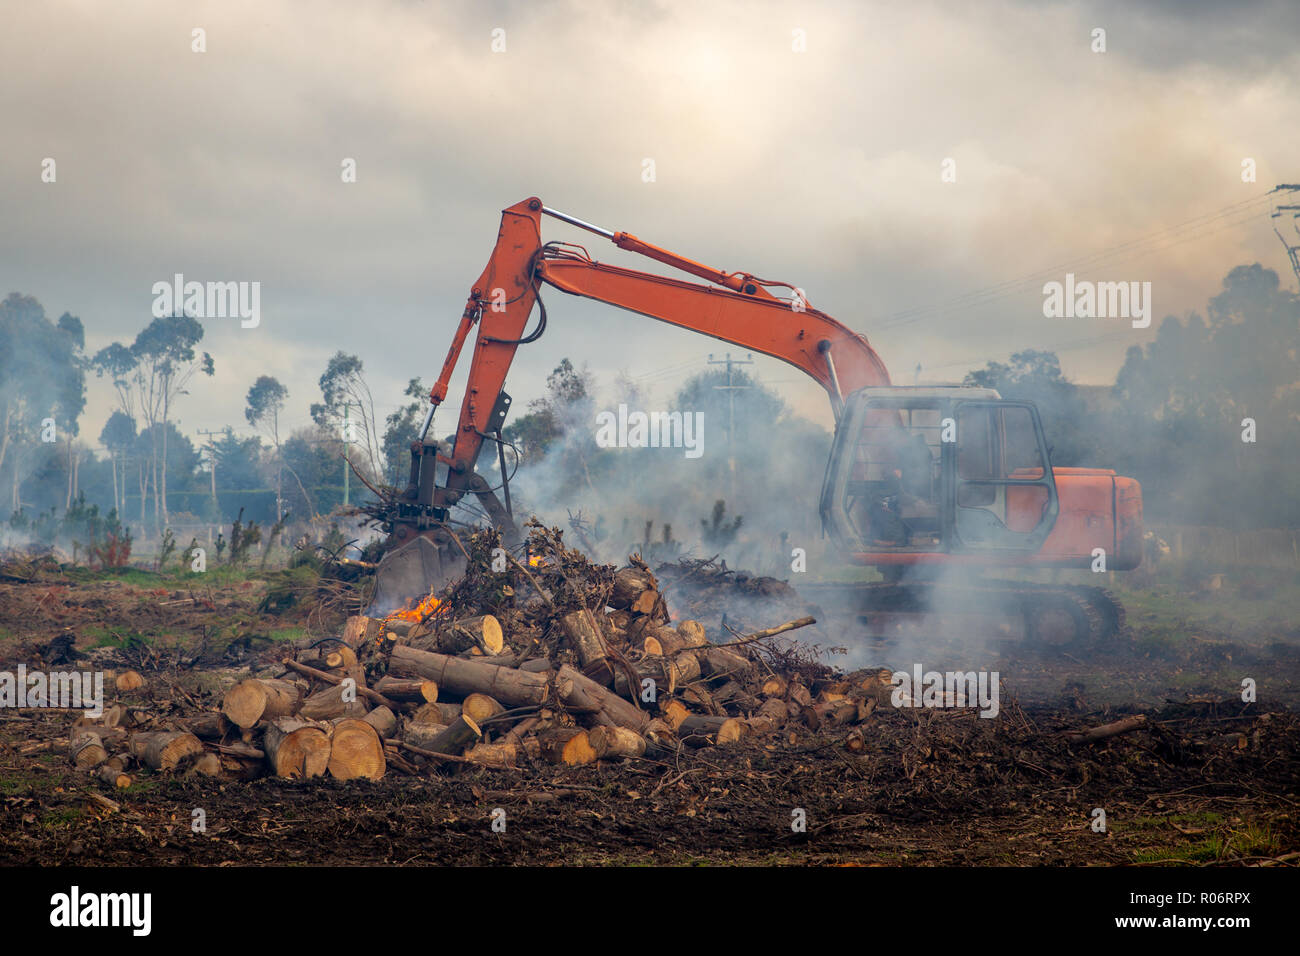 Un creuseur nettoie après que les arbres ont été consignés, racler l'ensemble des déchets à brûler dans un incendie causant l'air d'être tous fumé Banque D'Images